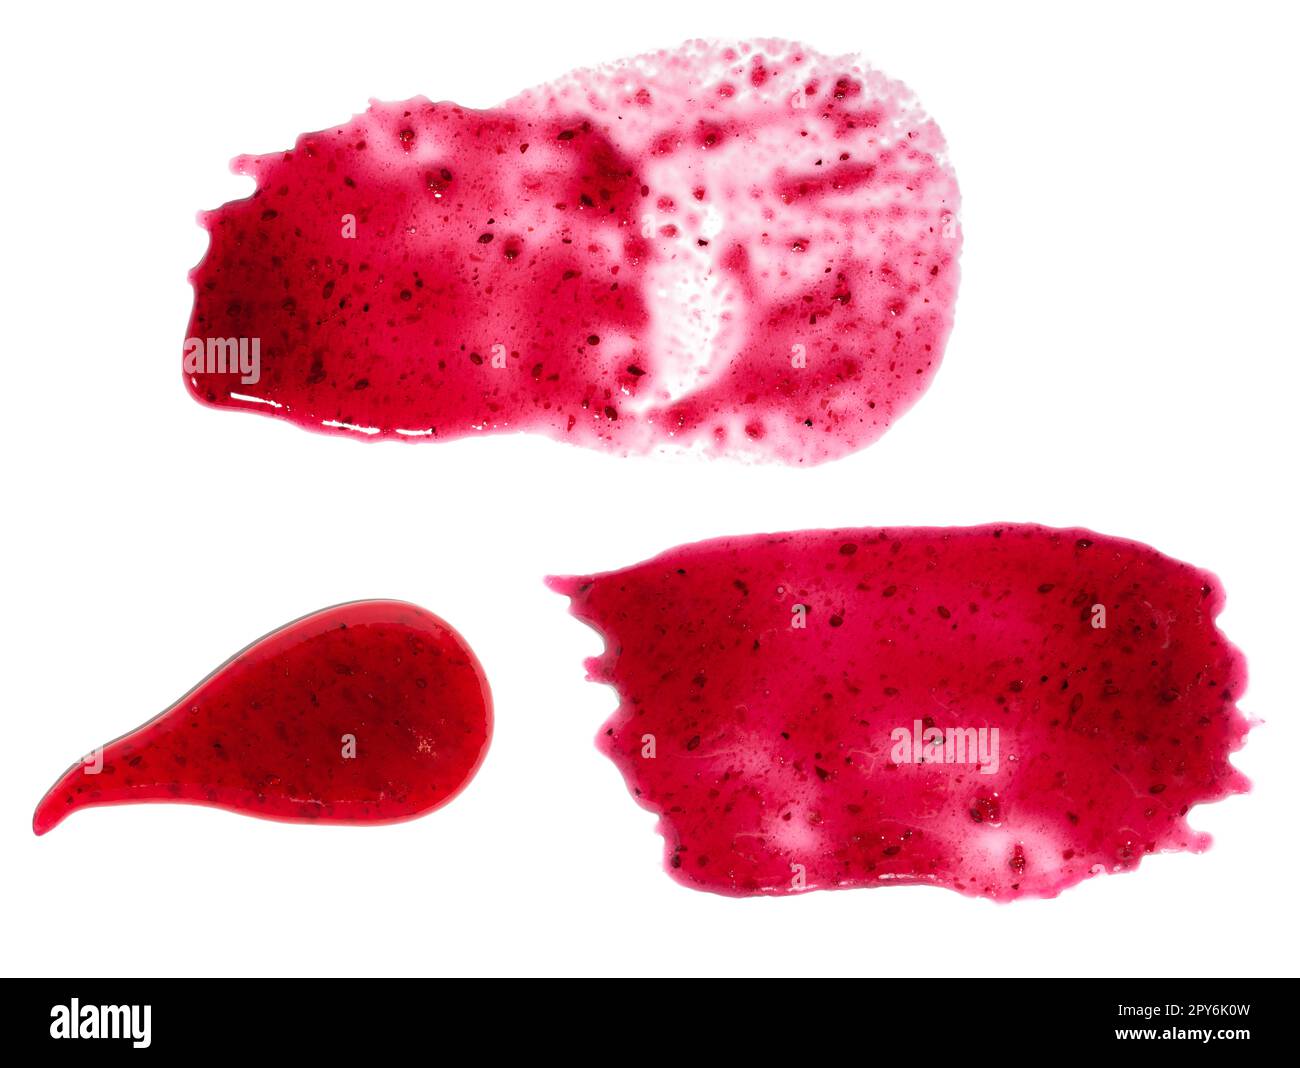 Roter Klumpen Blaubeermarmelade isoliert auf weißem Hintergrund Stockfoto